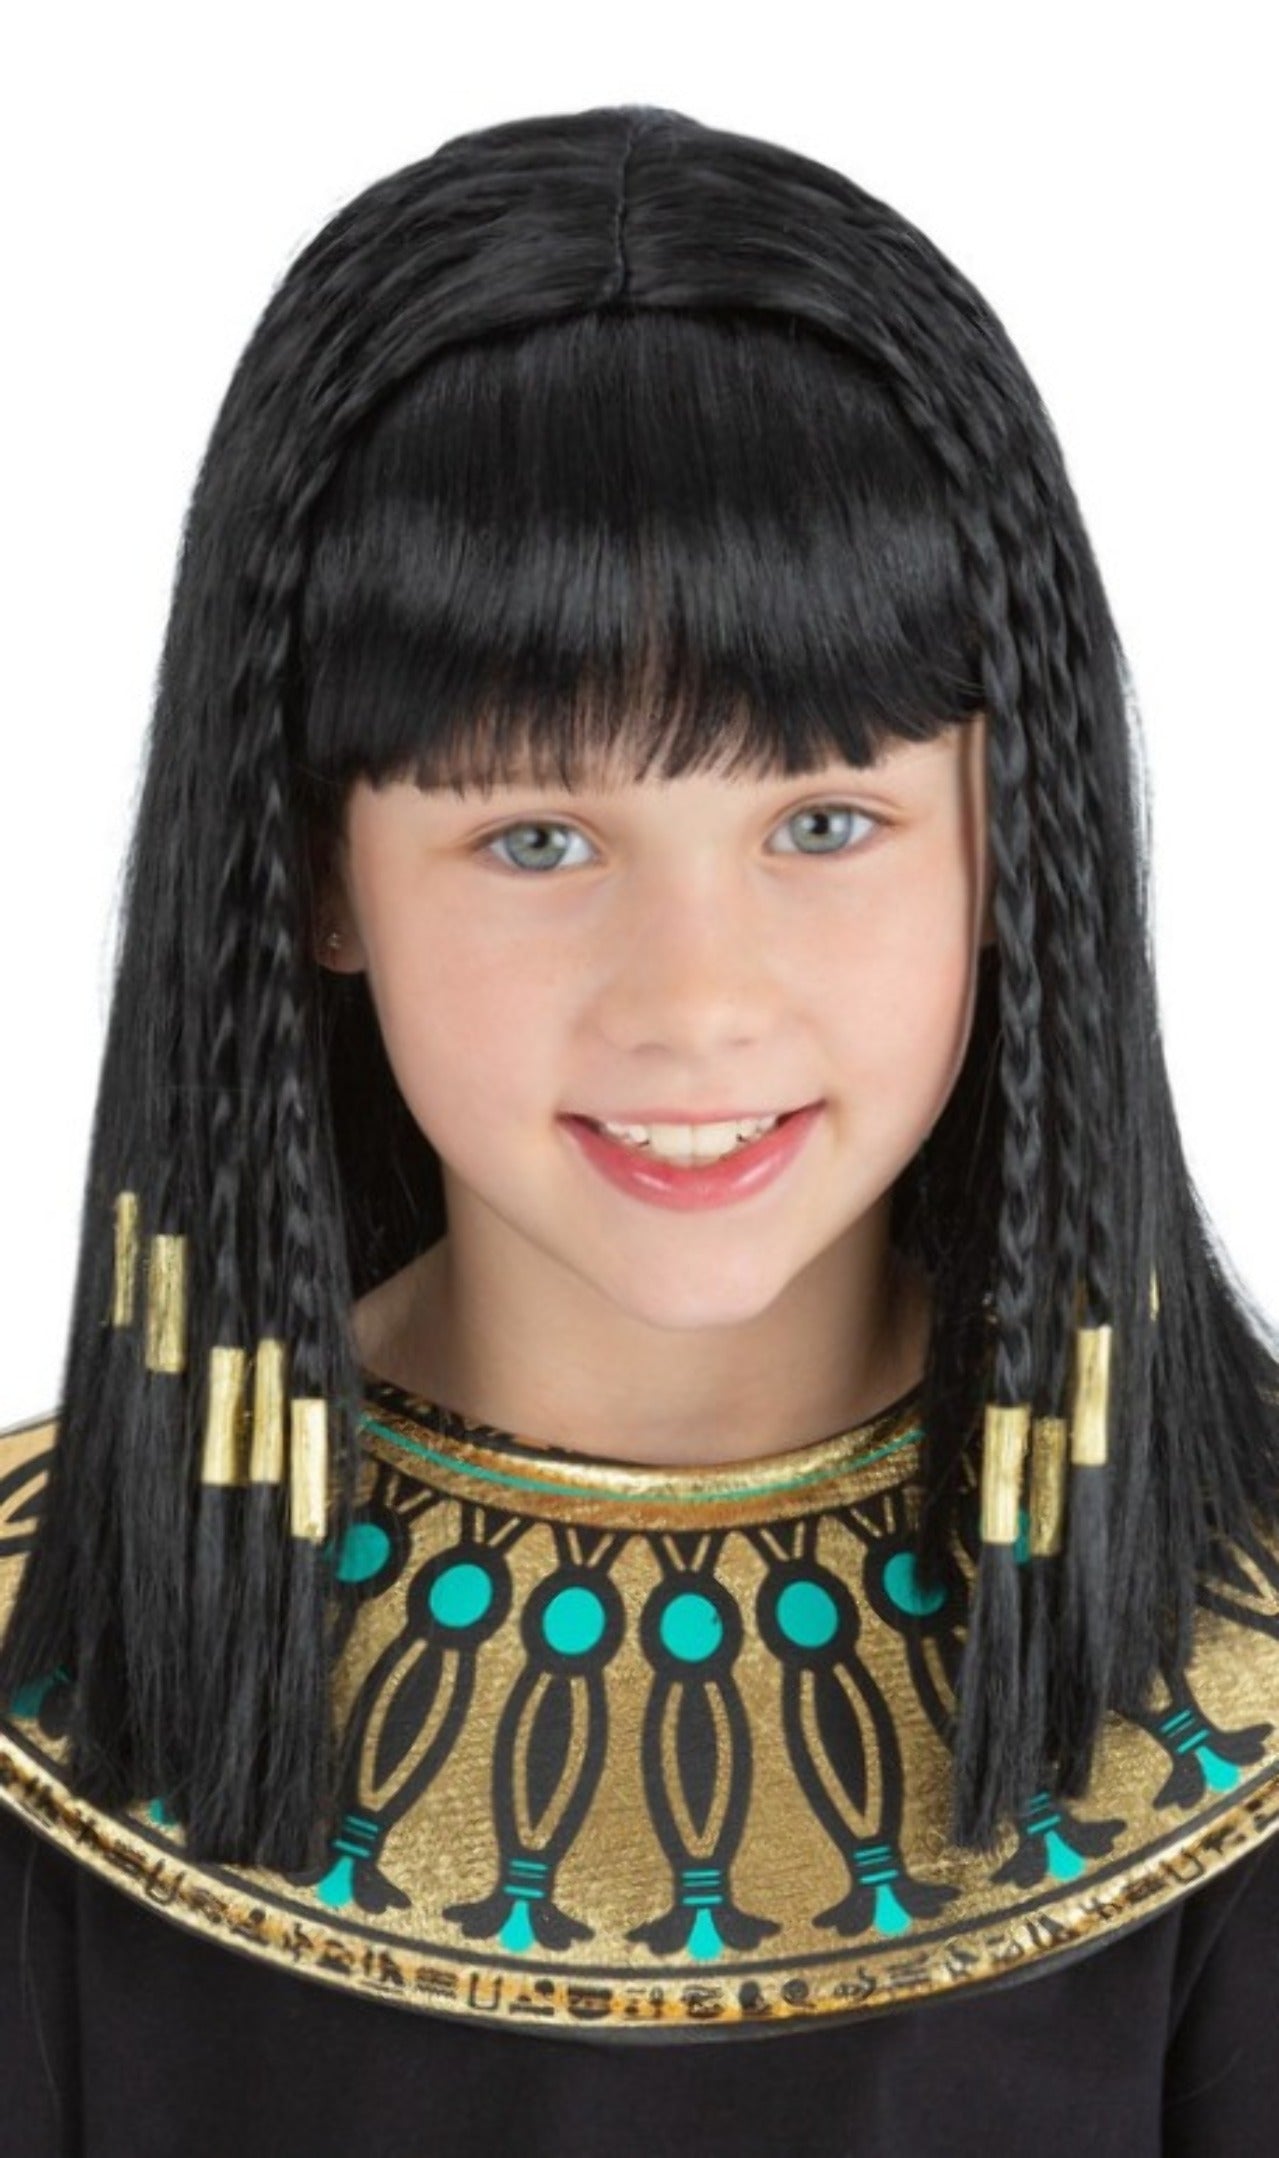 http://it.costumalia.com/cdn/shop/products/peluca-de-egipcia-cleopatra-infantil.jpg?v=1685980581